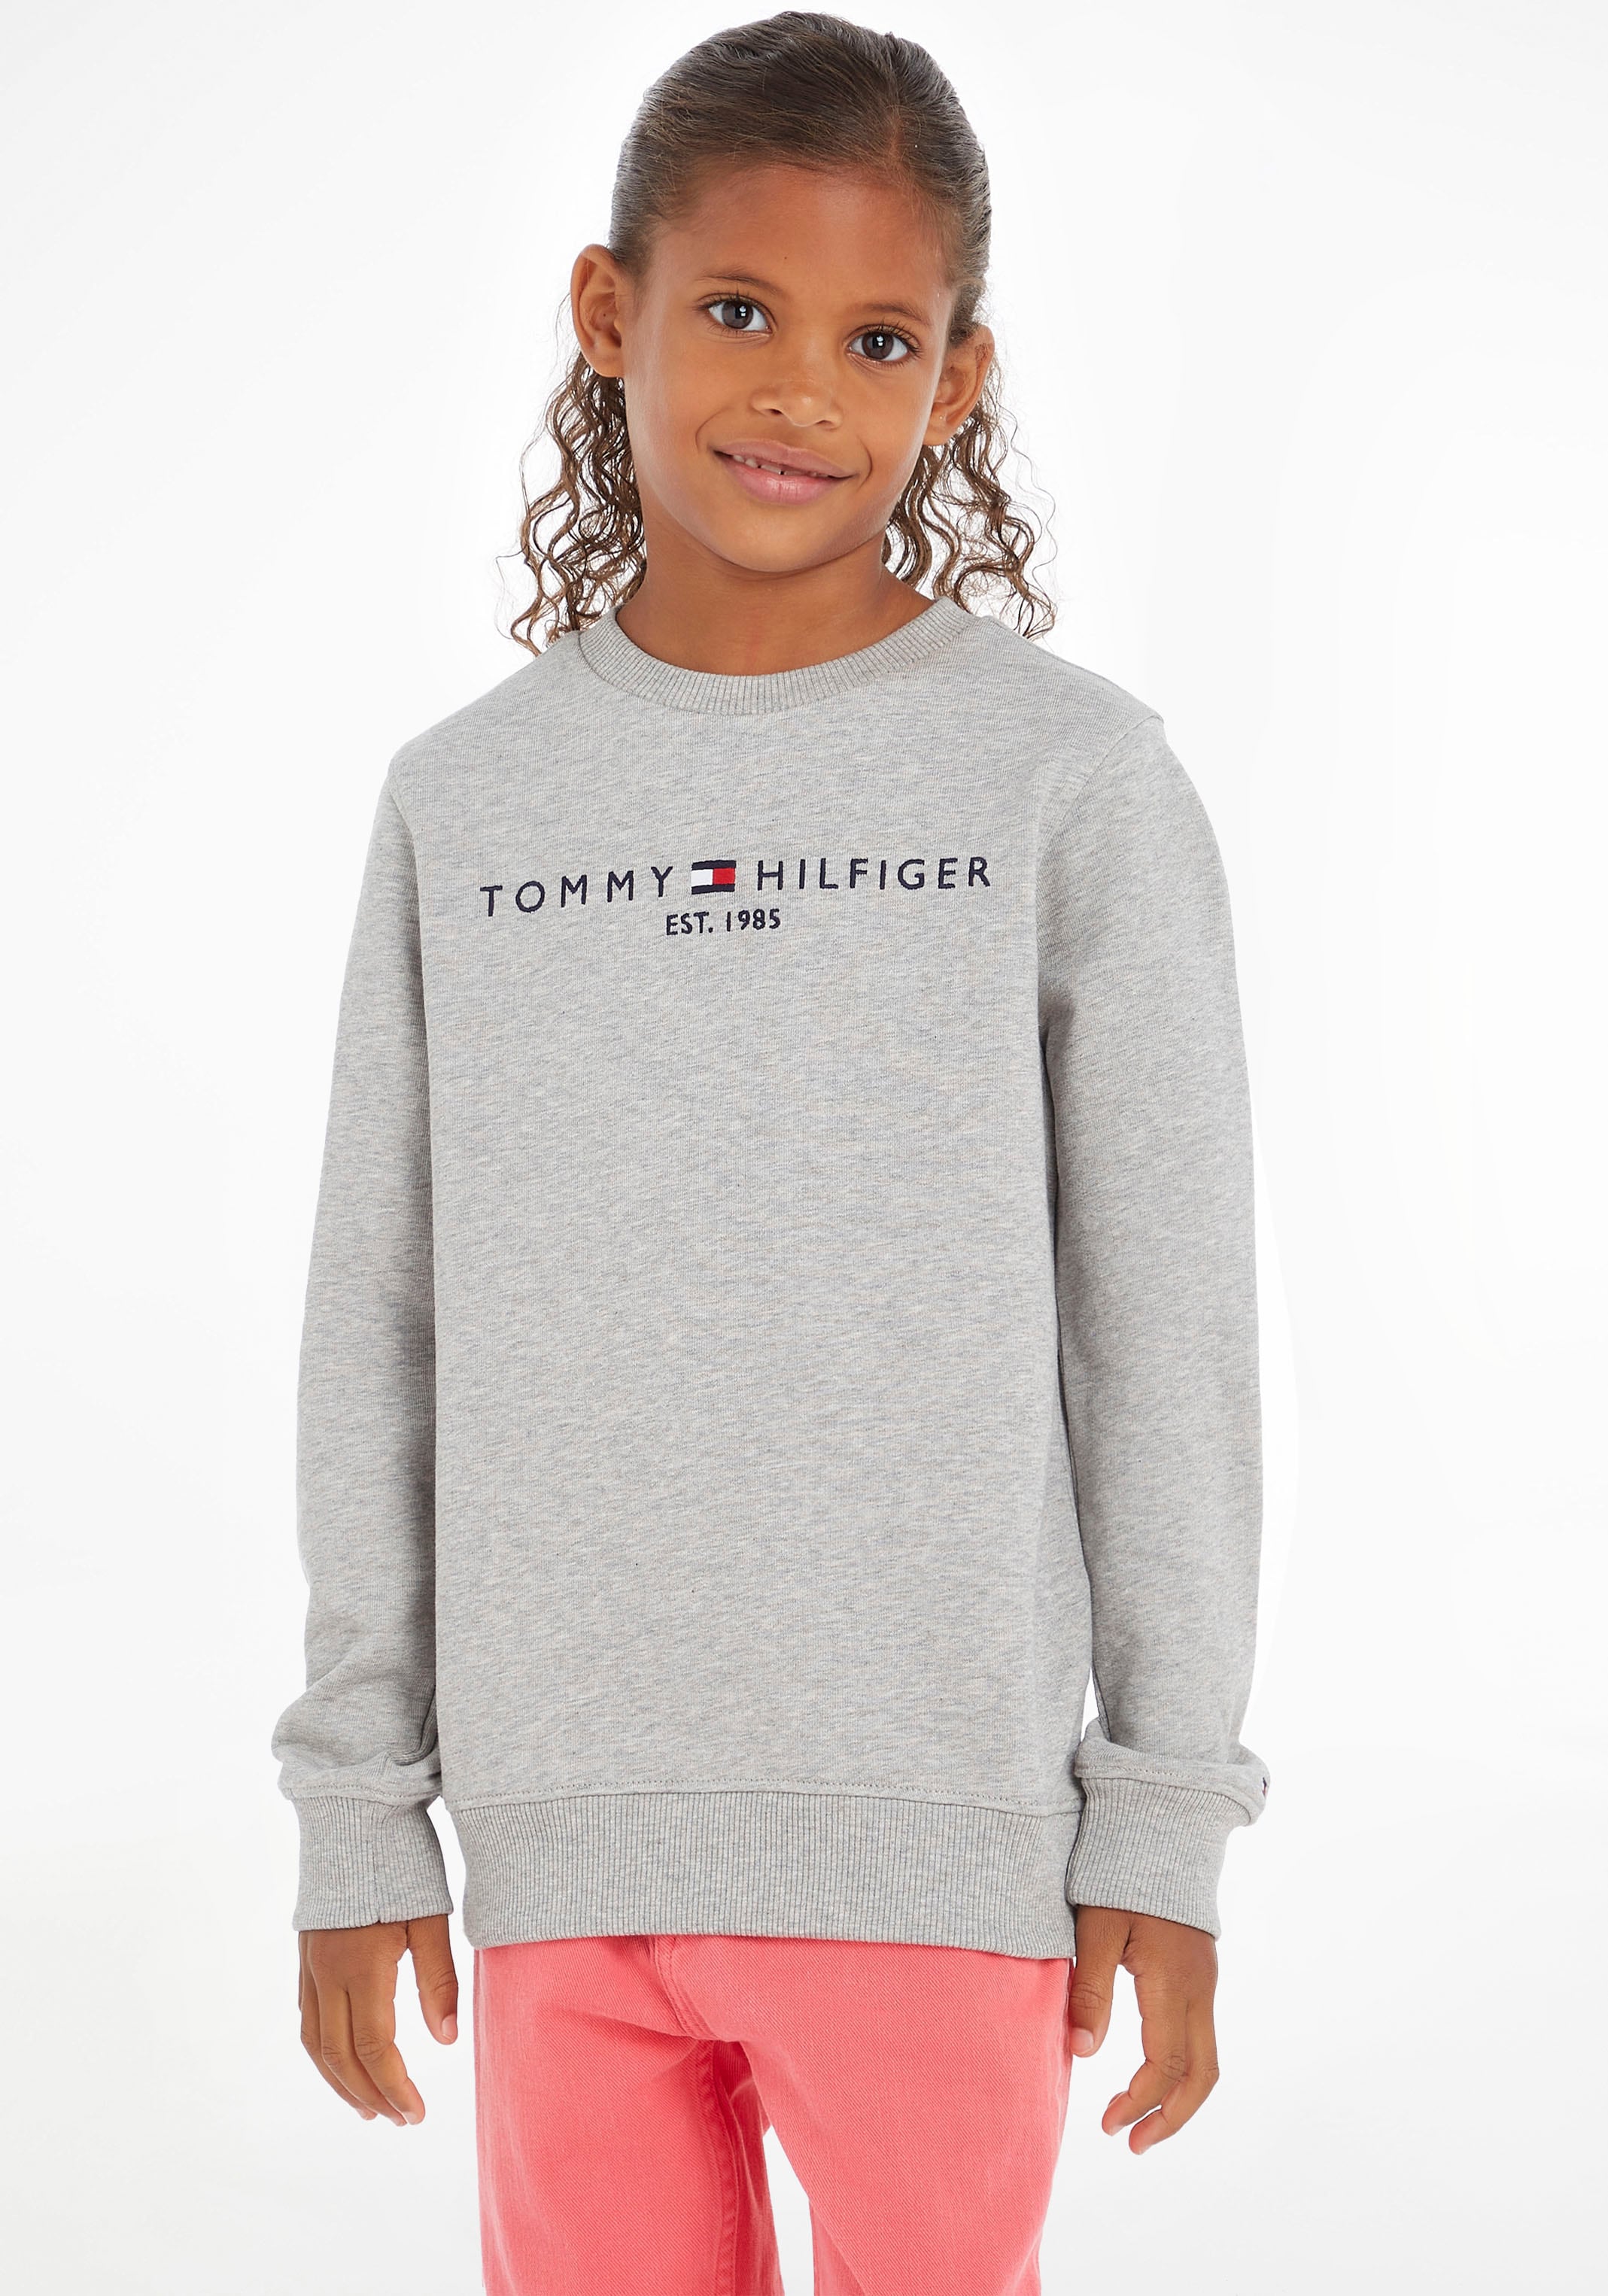 Tommy Hilfiger Sweatshirt »ESSENTIAL SWEATSHIRT«, Kinder Kids Junior MiniMe,für  Jungen und Mädchen bei OTTO